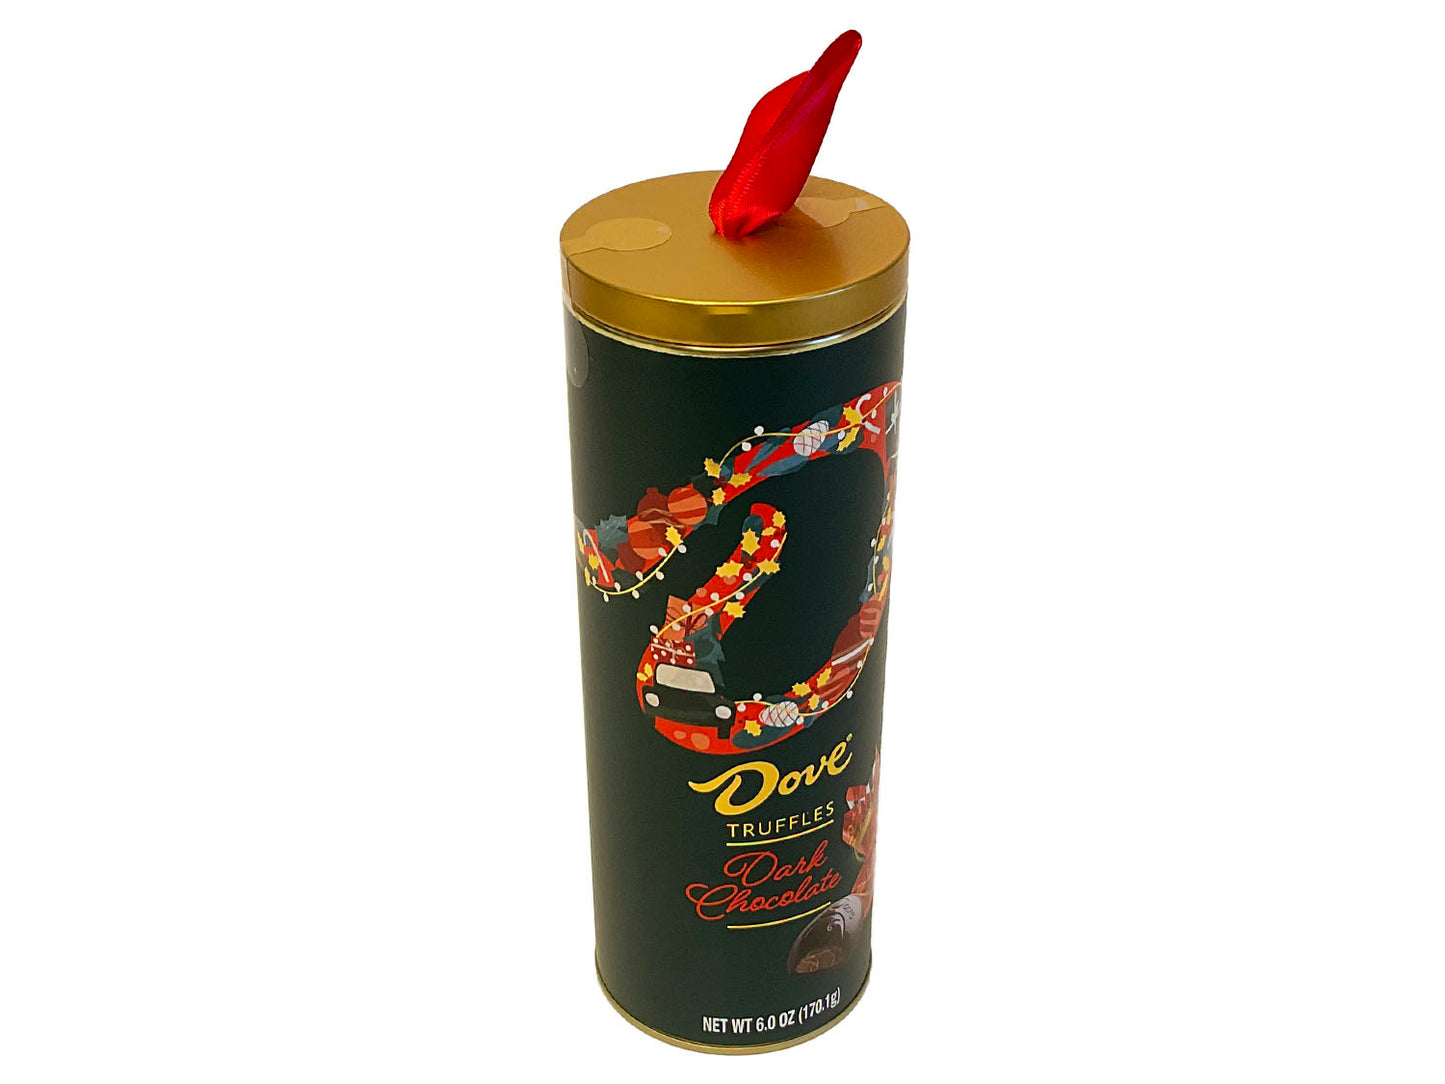 Dove Dark Chocolate Truffle Gift Tube - 6 oz